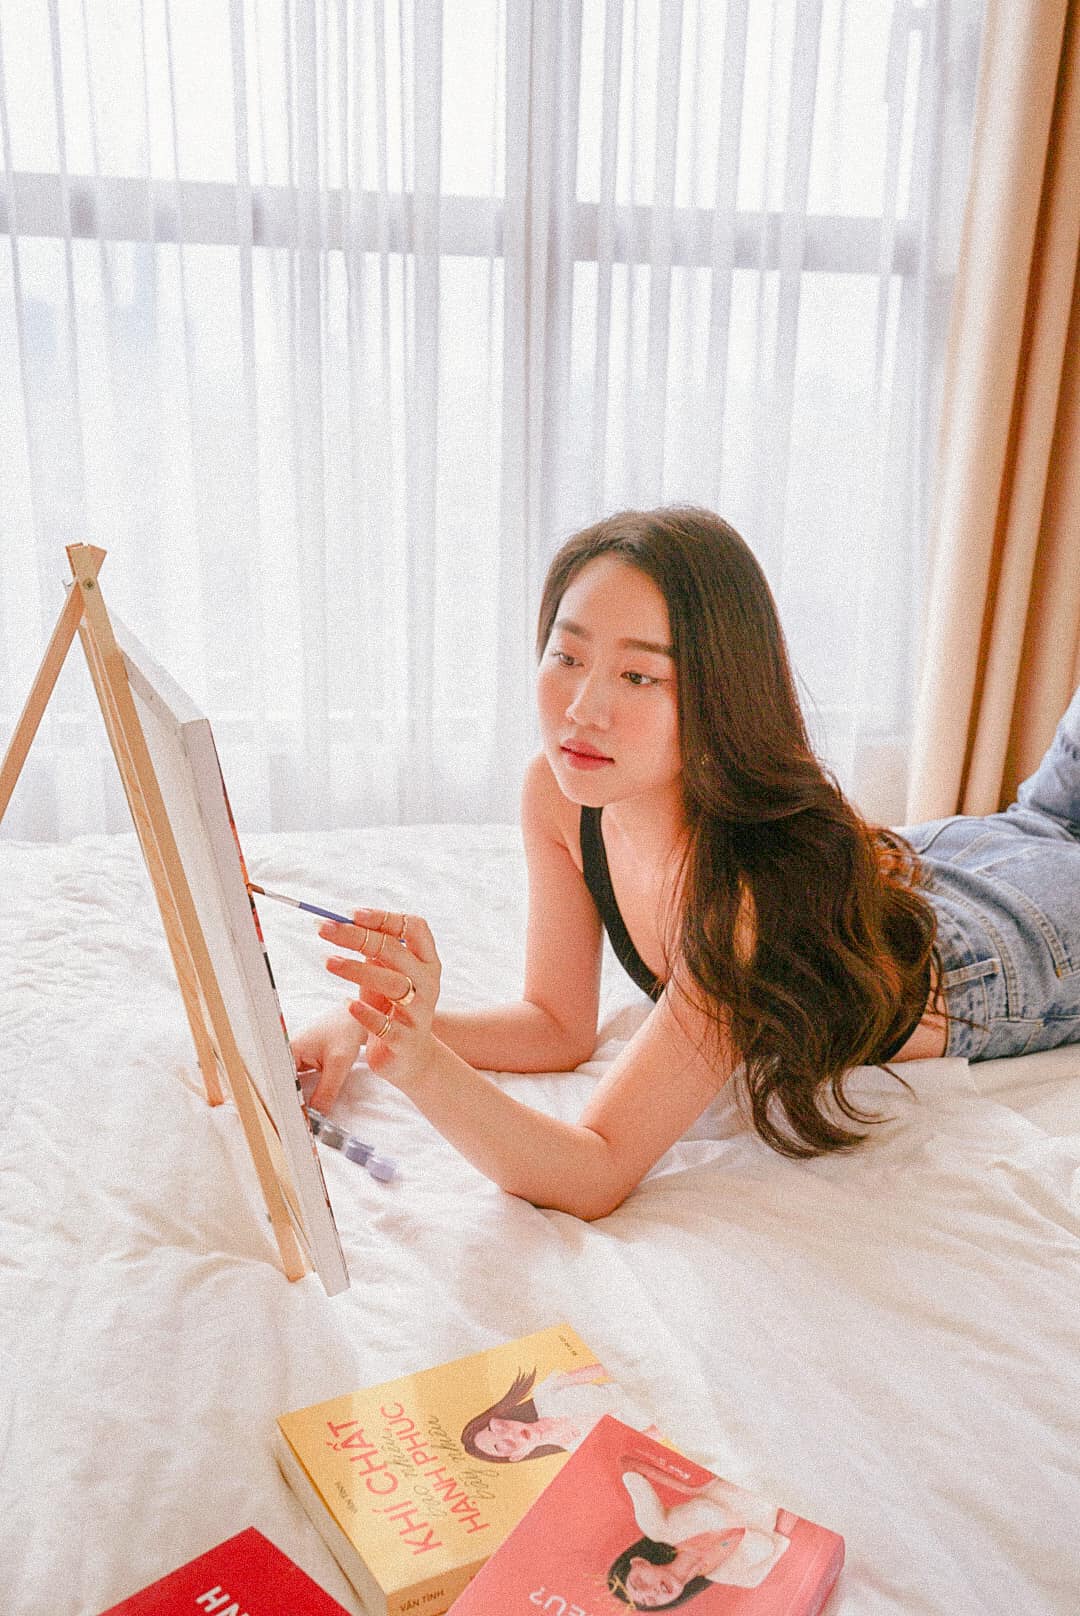 Huỳnh Hồng Loan tận hưởng những ngày giãn cách thảnh thơi tại nhà. Cô chia sẻ hình ảnh vẽ tranh trên giường ngủ cùng nhiều cuốn sách đọc thư giãn.